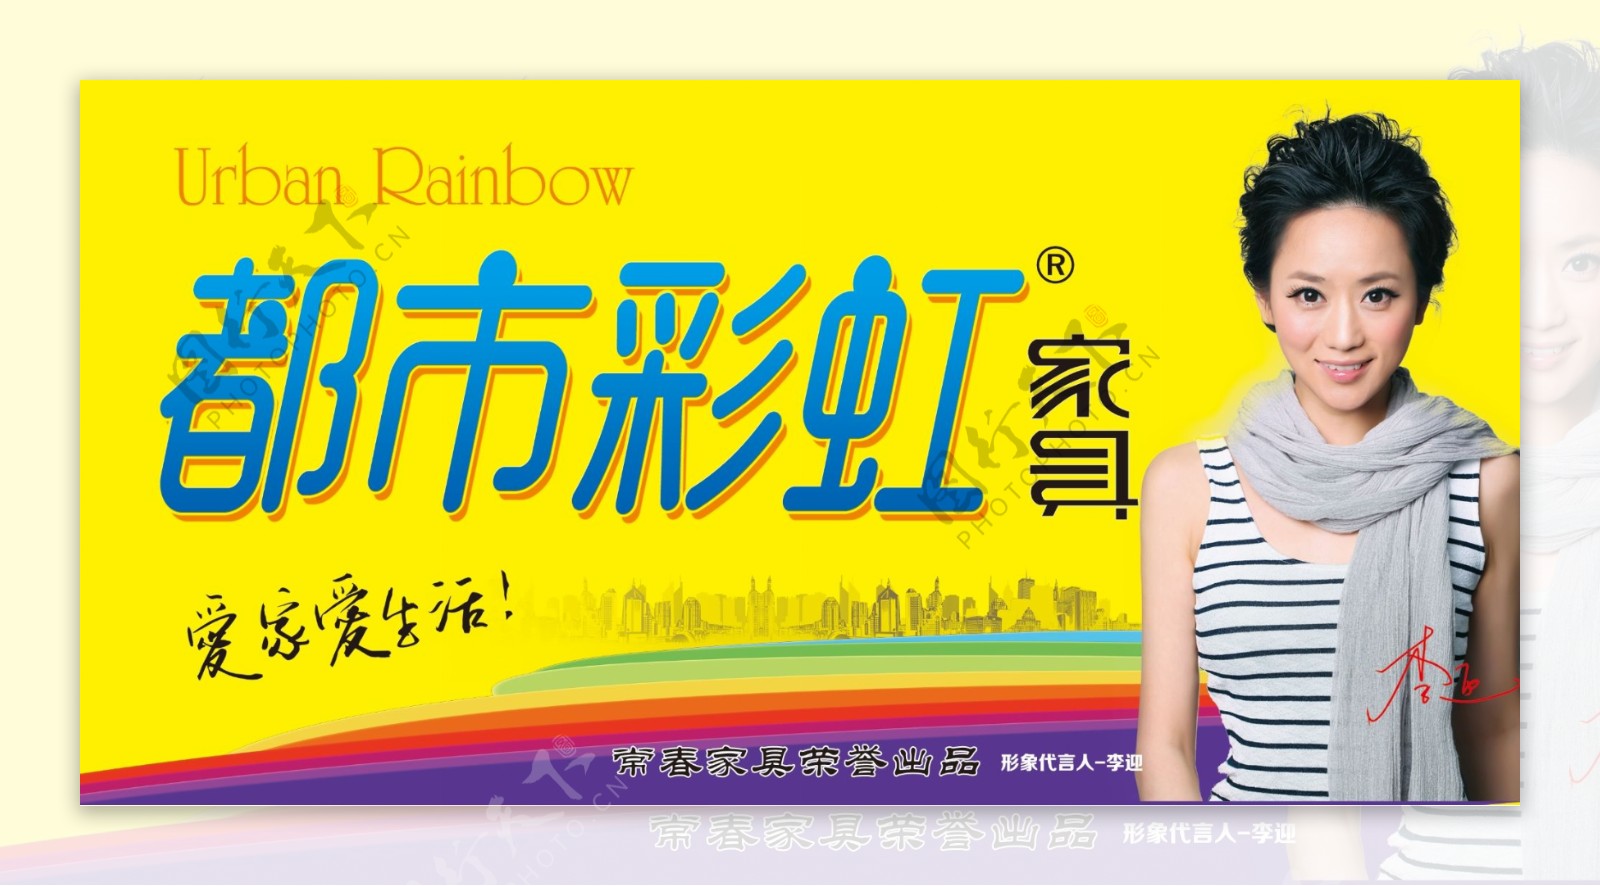 都市彩虹家具广告宣传形象代言李迎